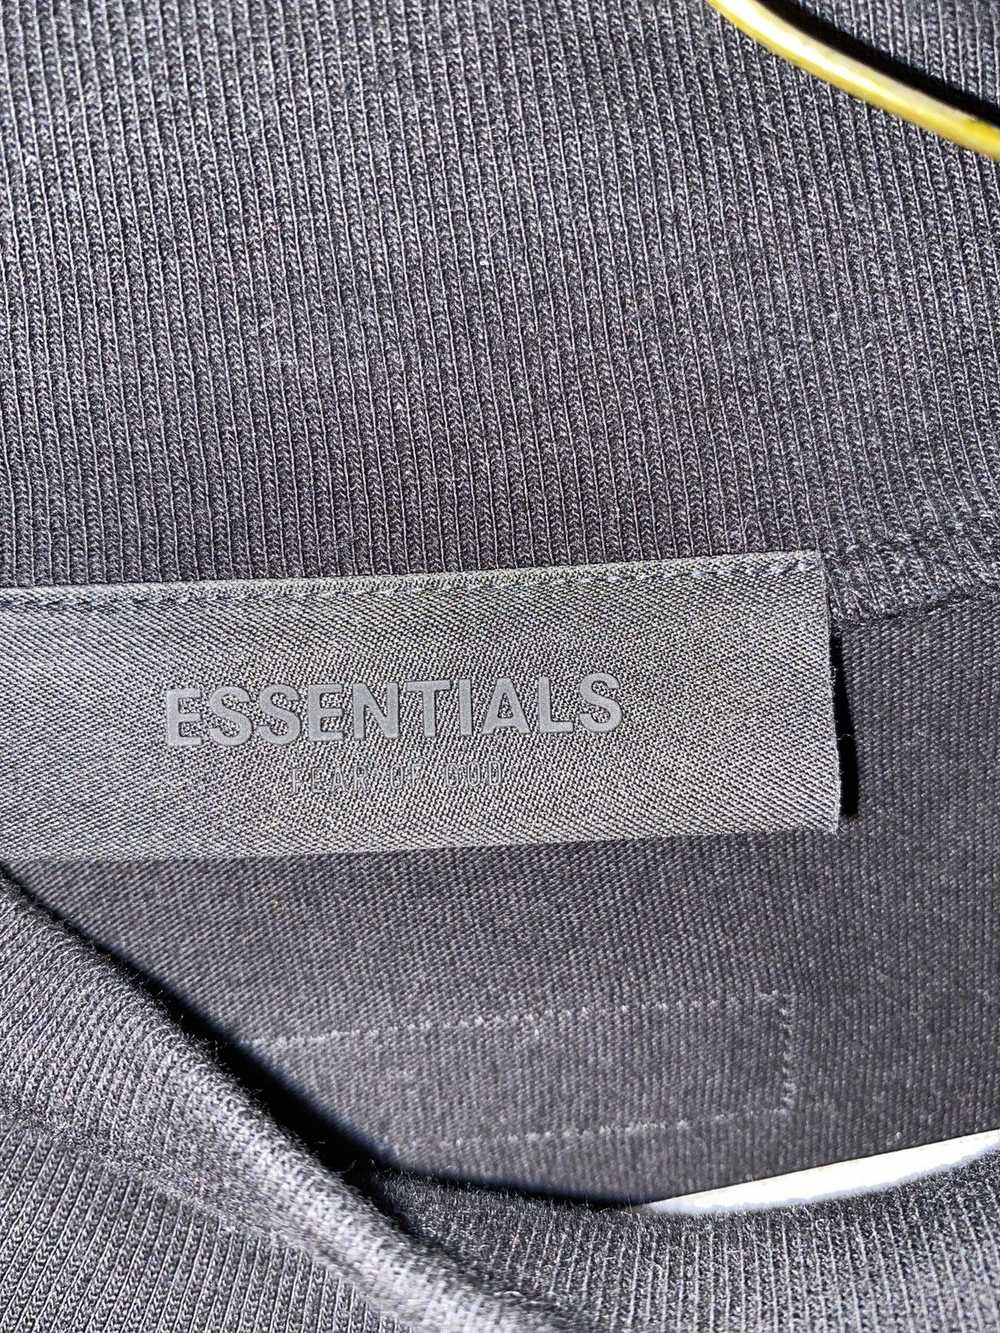 Essentials oversized essentials shirt - image 2